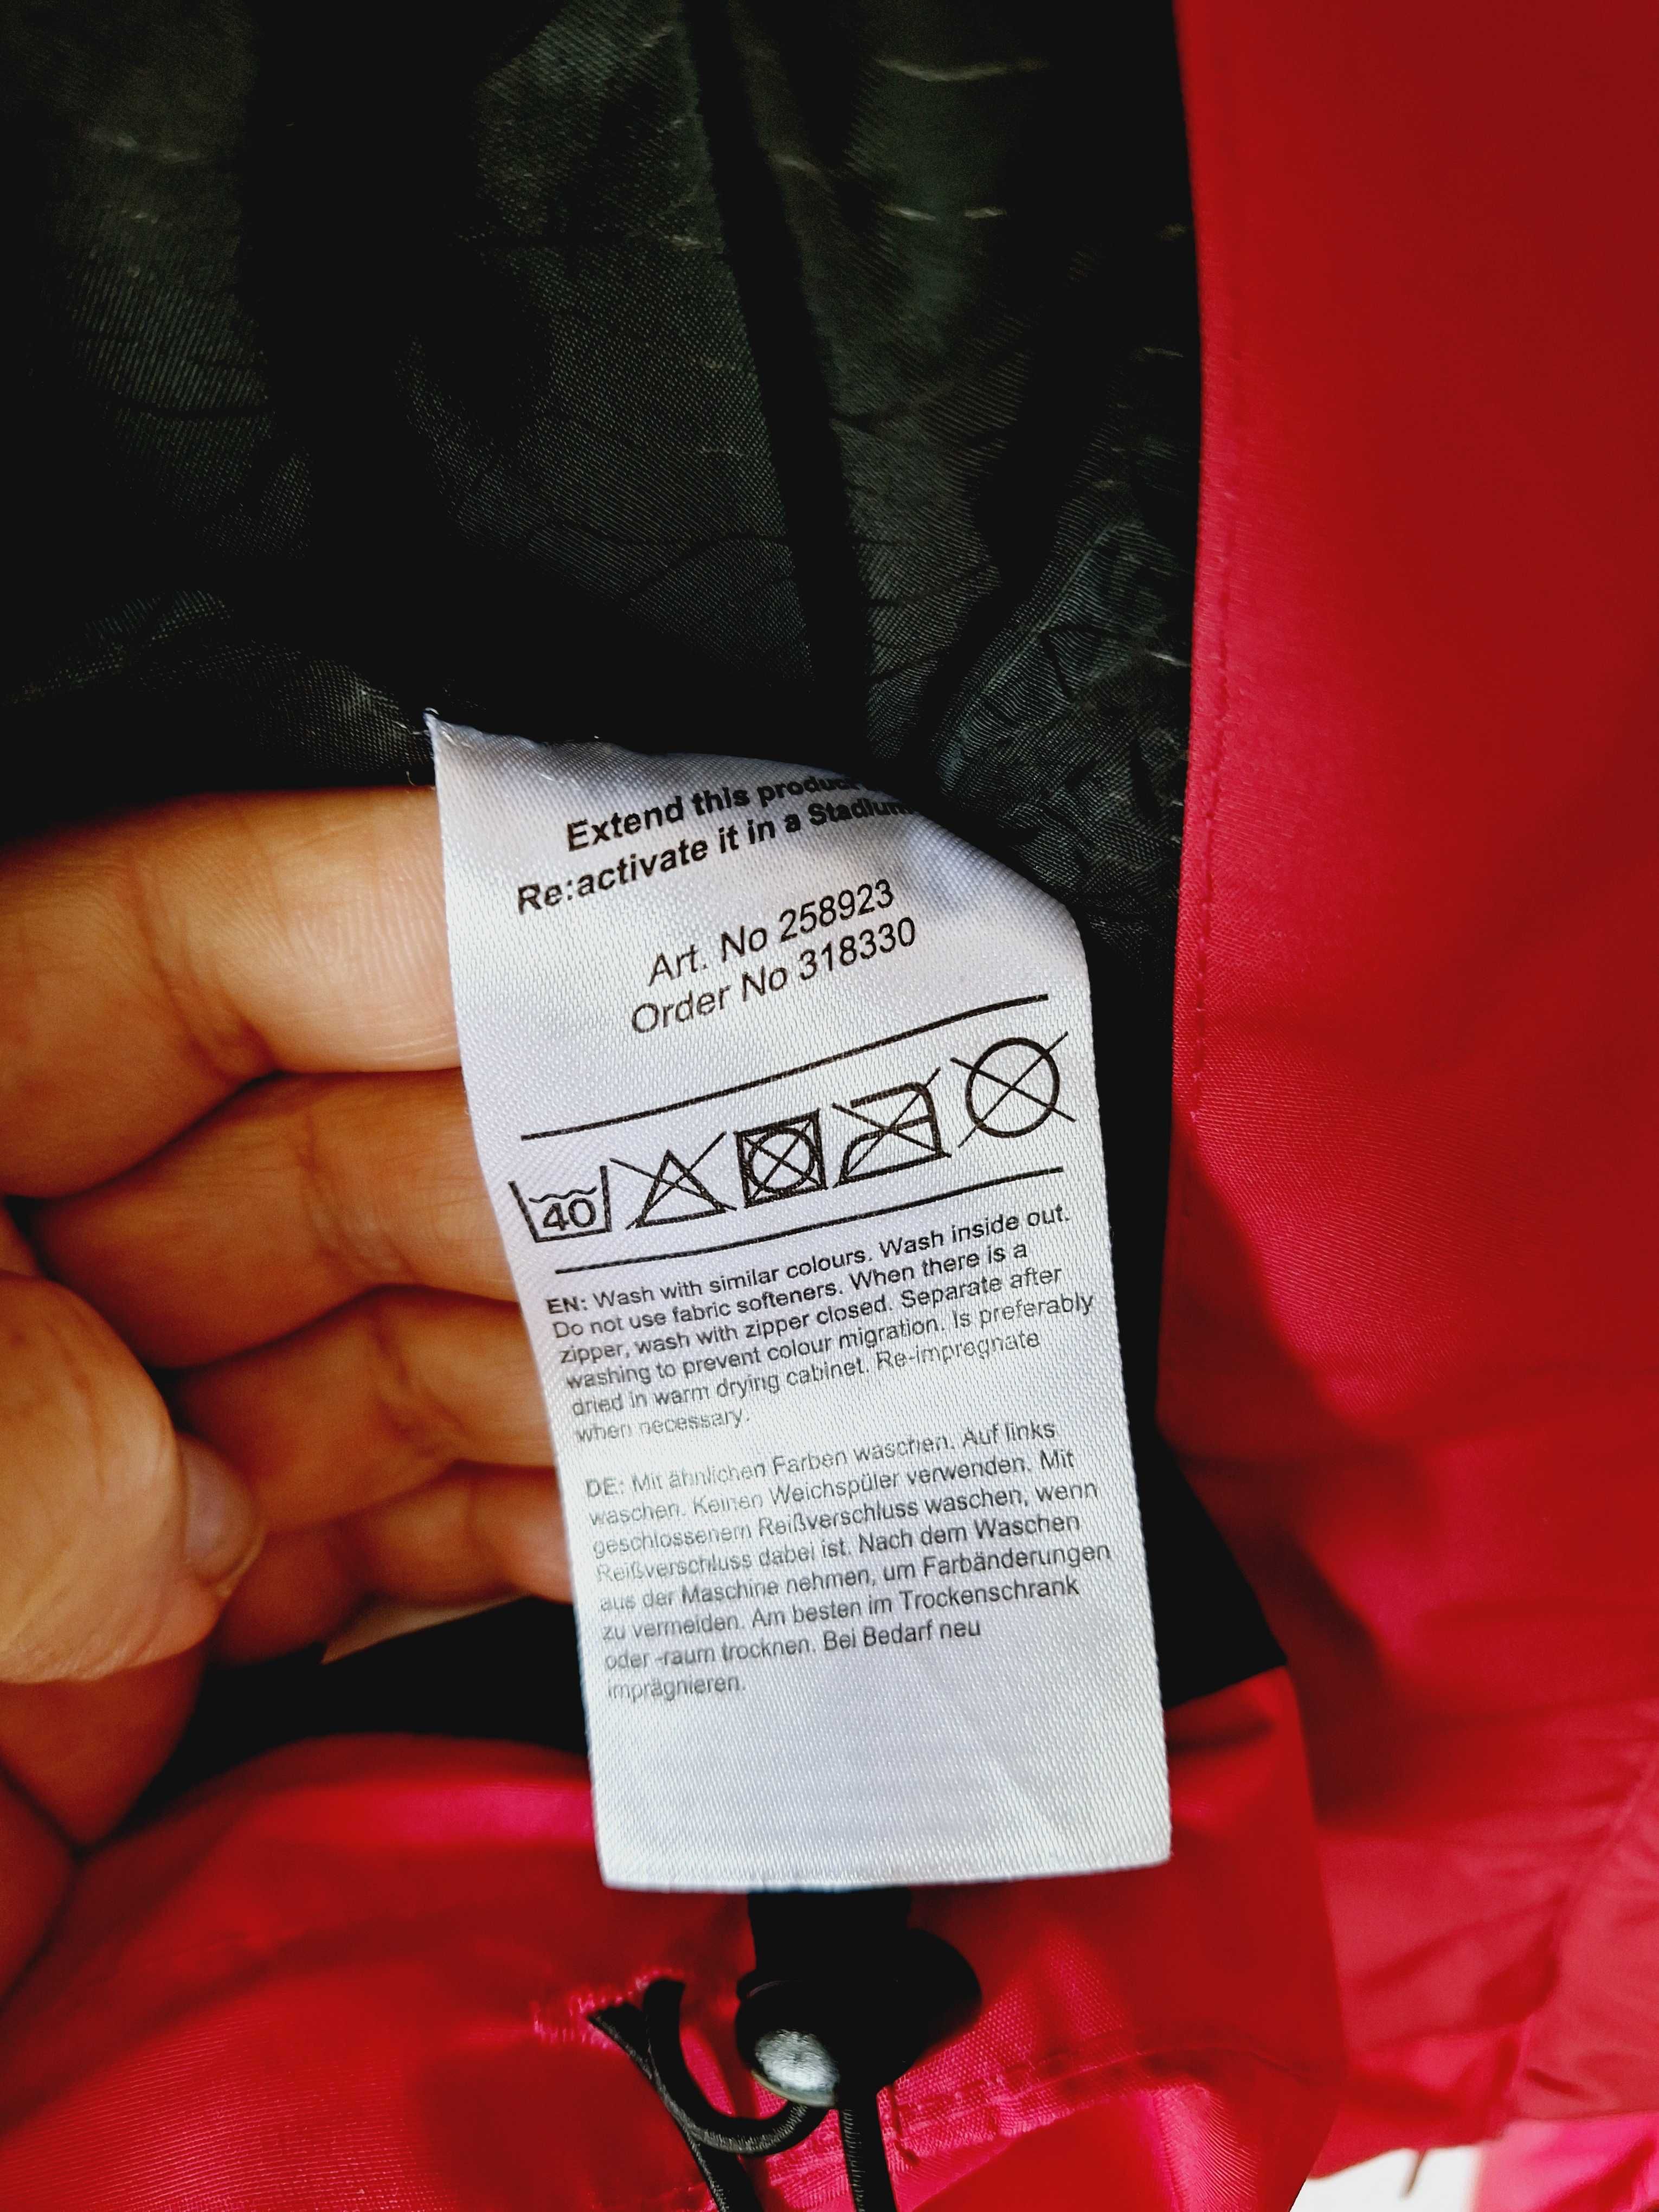 Kurtka spodnie softshell Everest 146 - 152 różowy komplet przejściowy